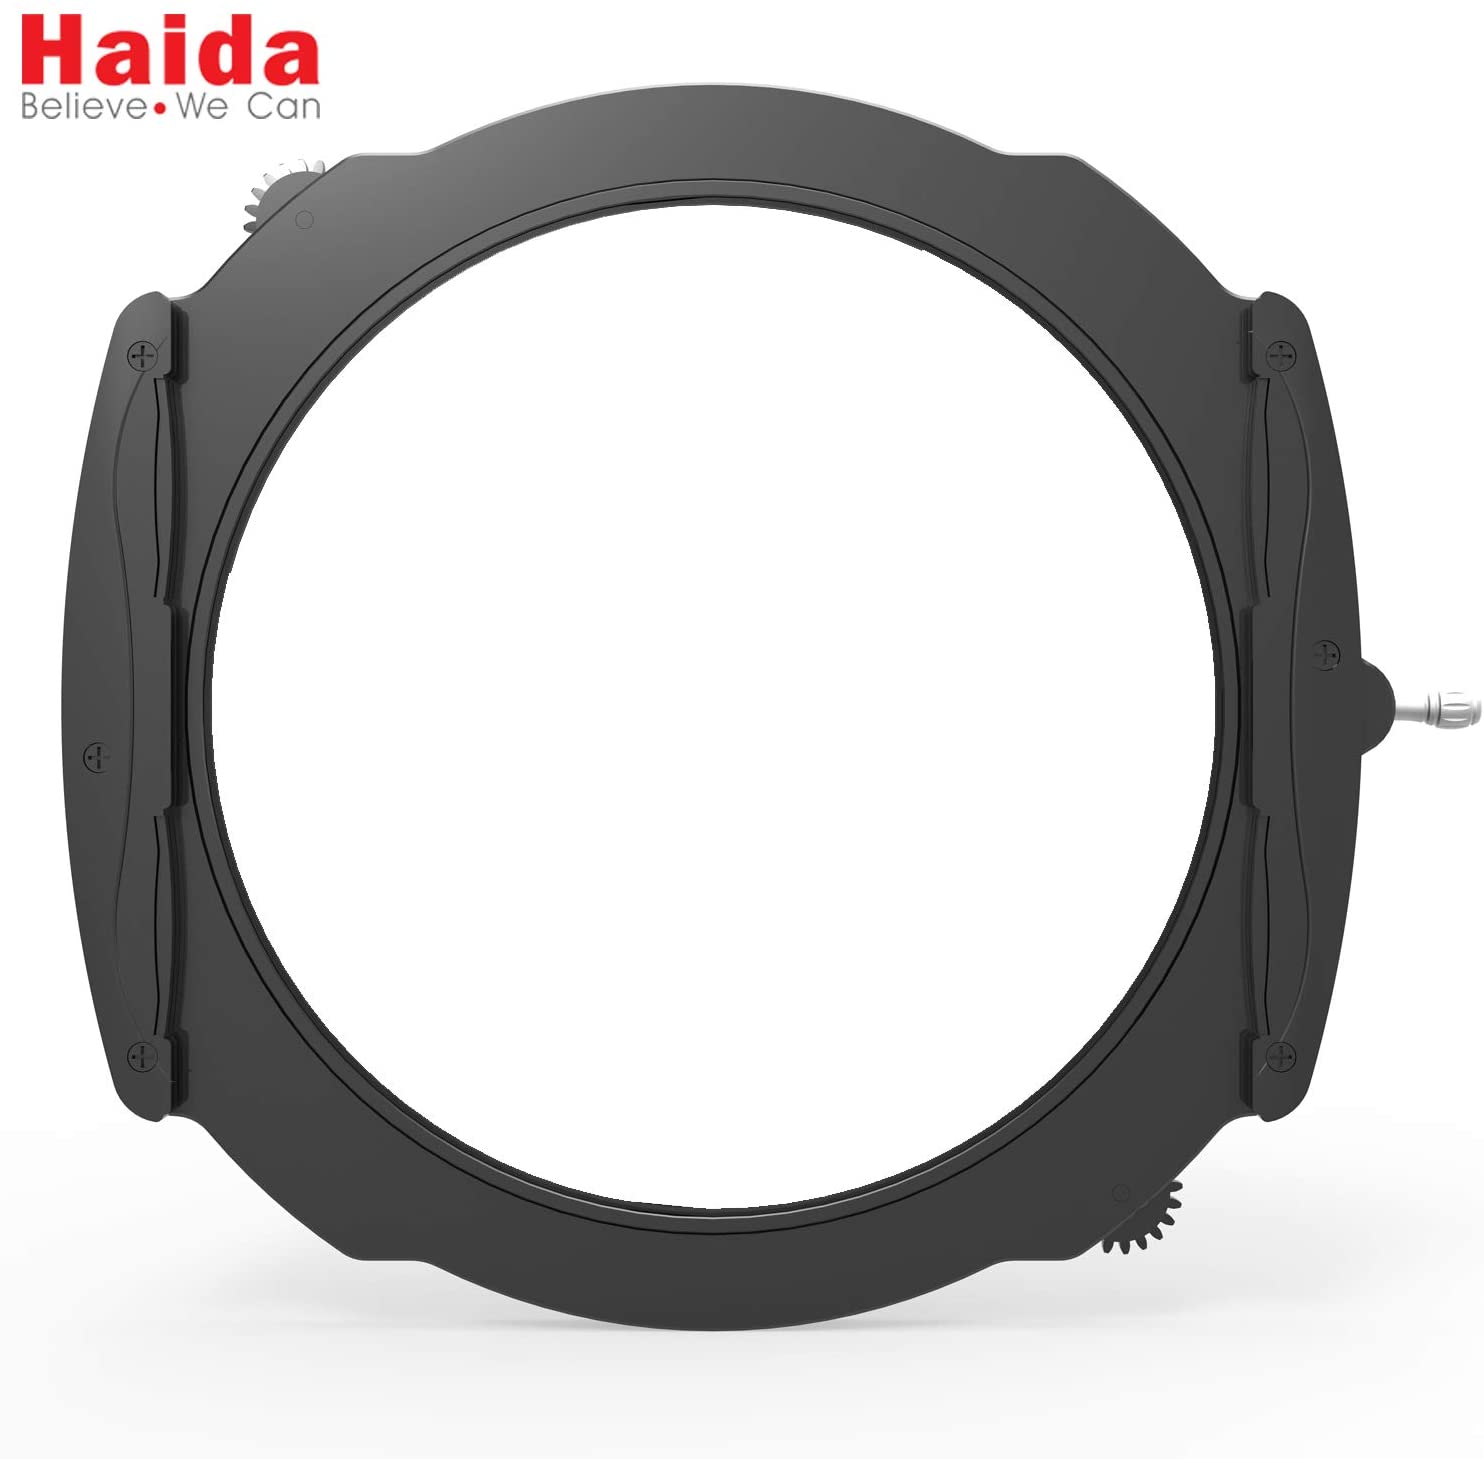 Haida M15 Filter Holder System for Nikon 14-24mm f/2.8G ED Lens